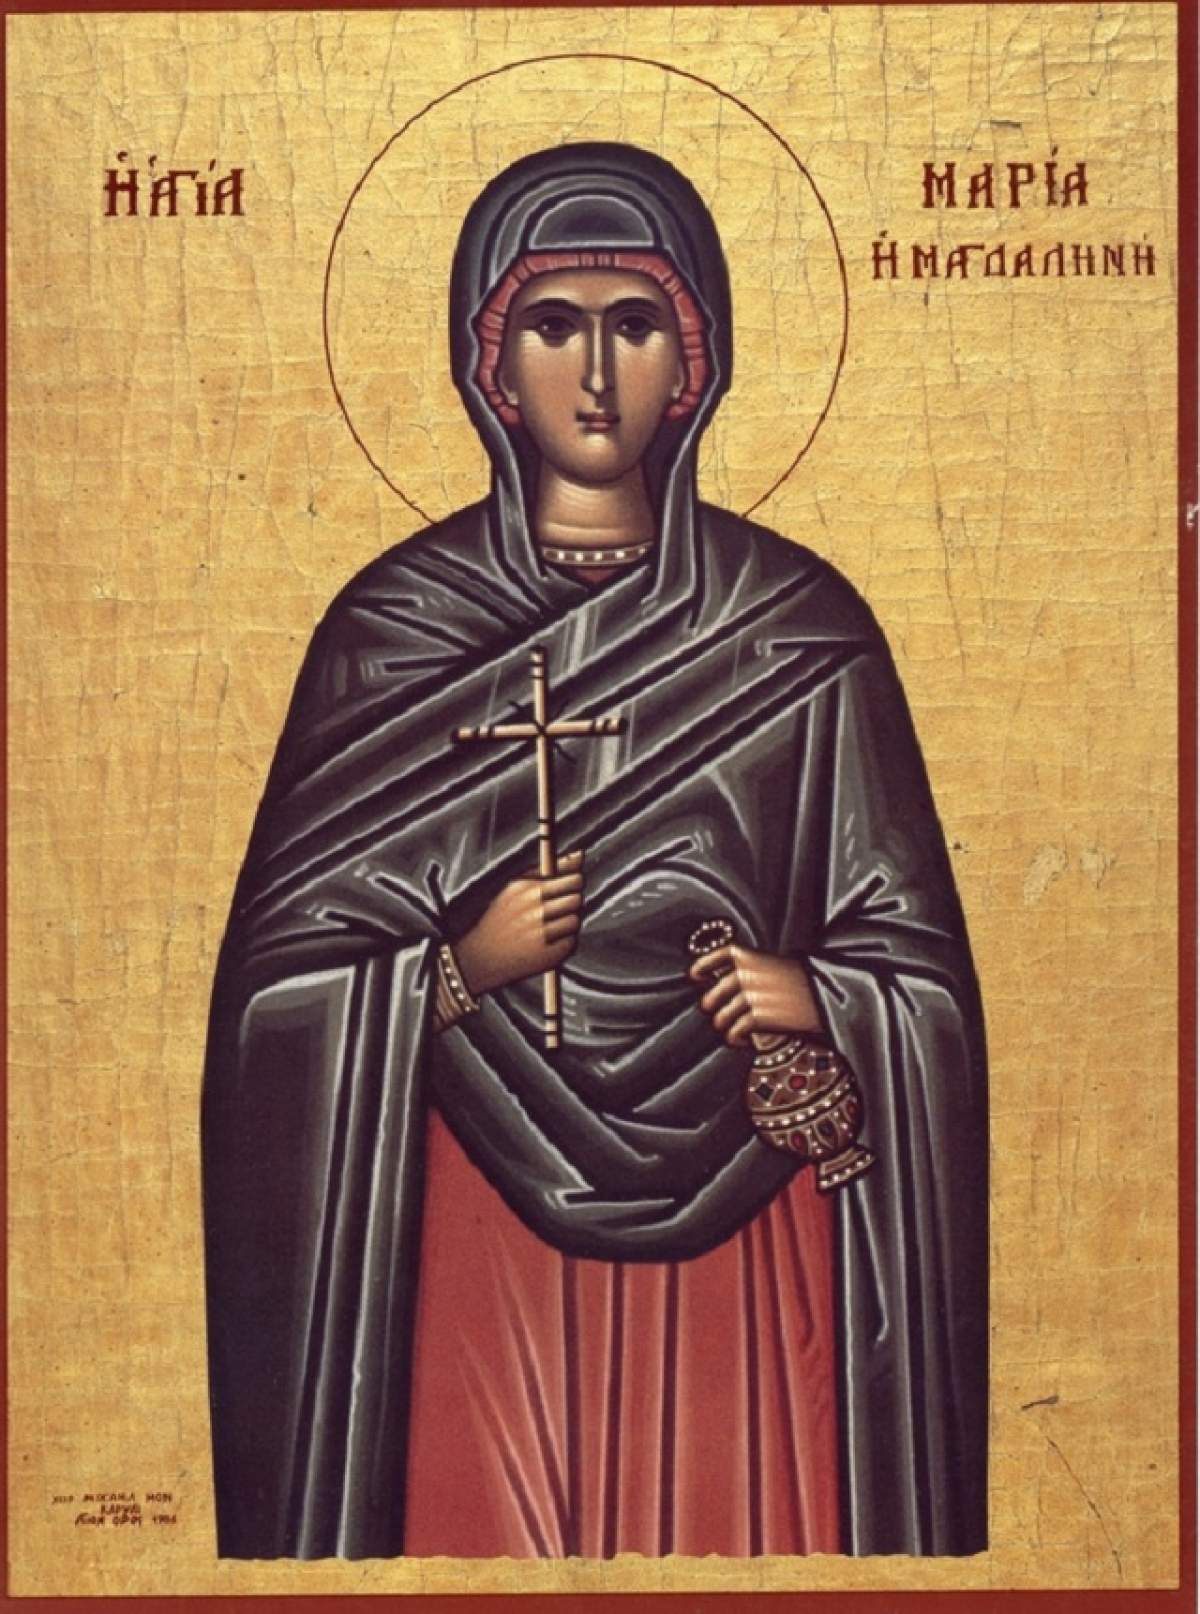 Zeci de mii de femei îi poartă numele! Maria Magdalena, sărbătorită în calendarul creştin ortodox